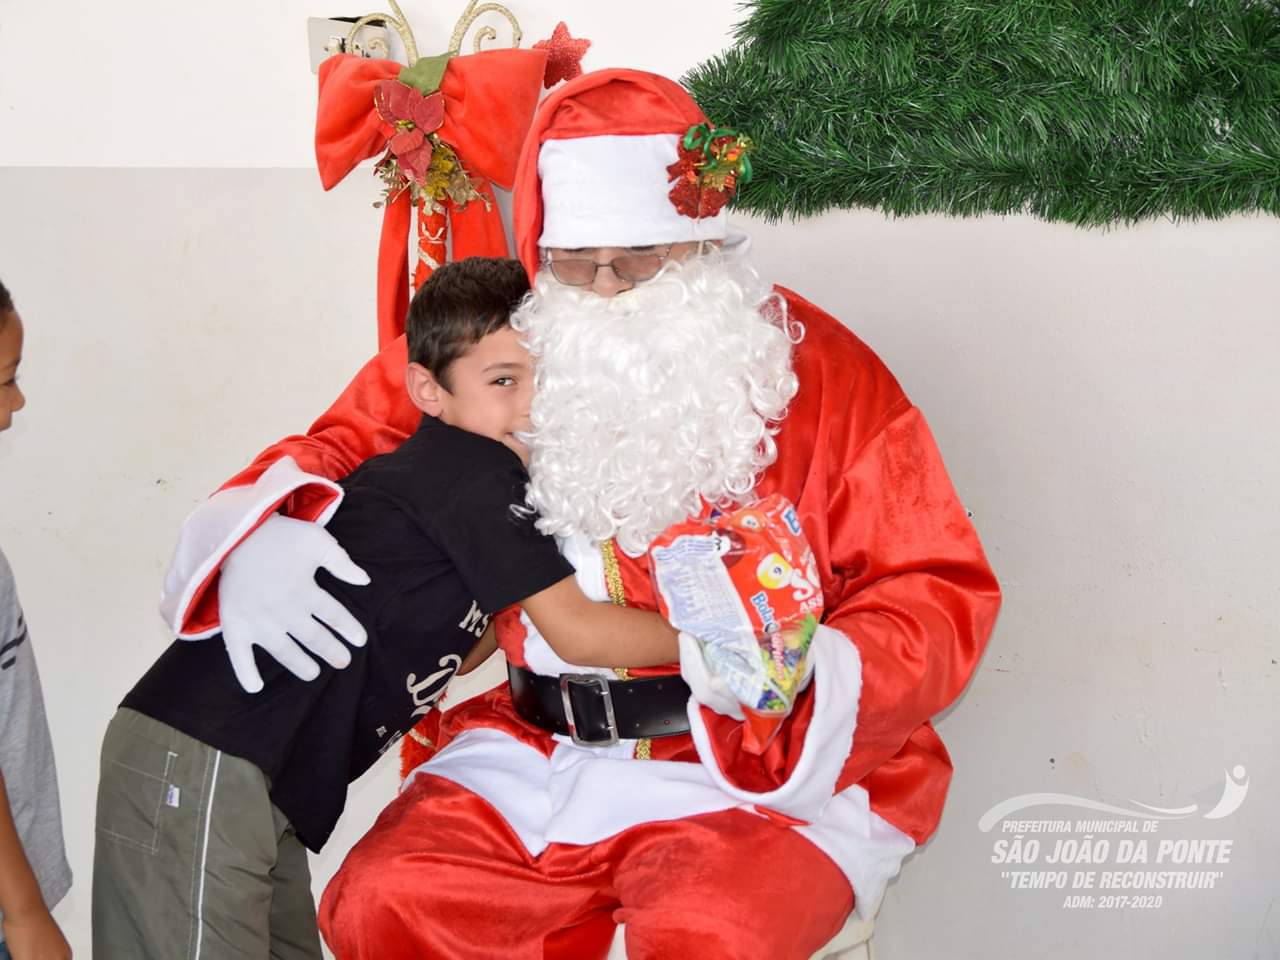 Acendimento das luzes e visita a chegada do Papai Noel abre a programação de natal em São João da Ponte.